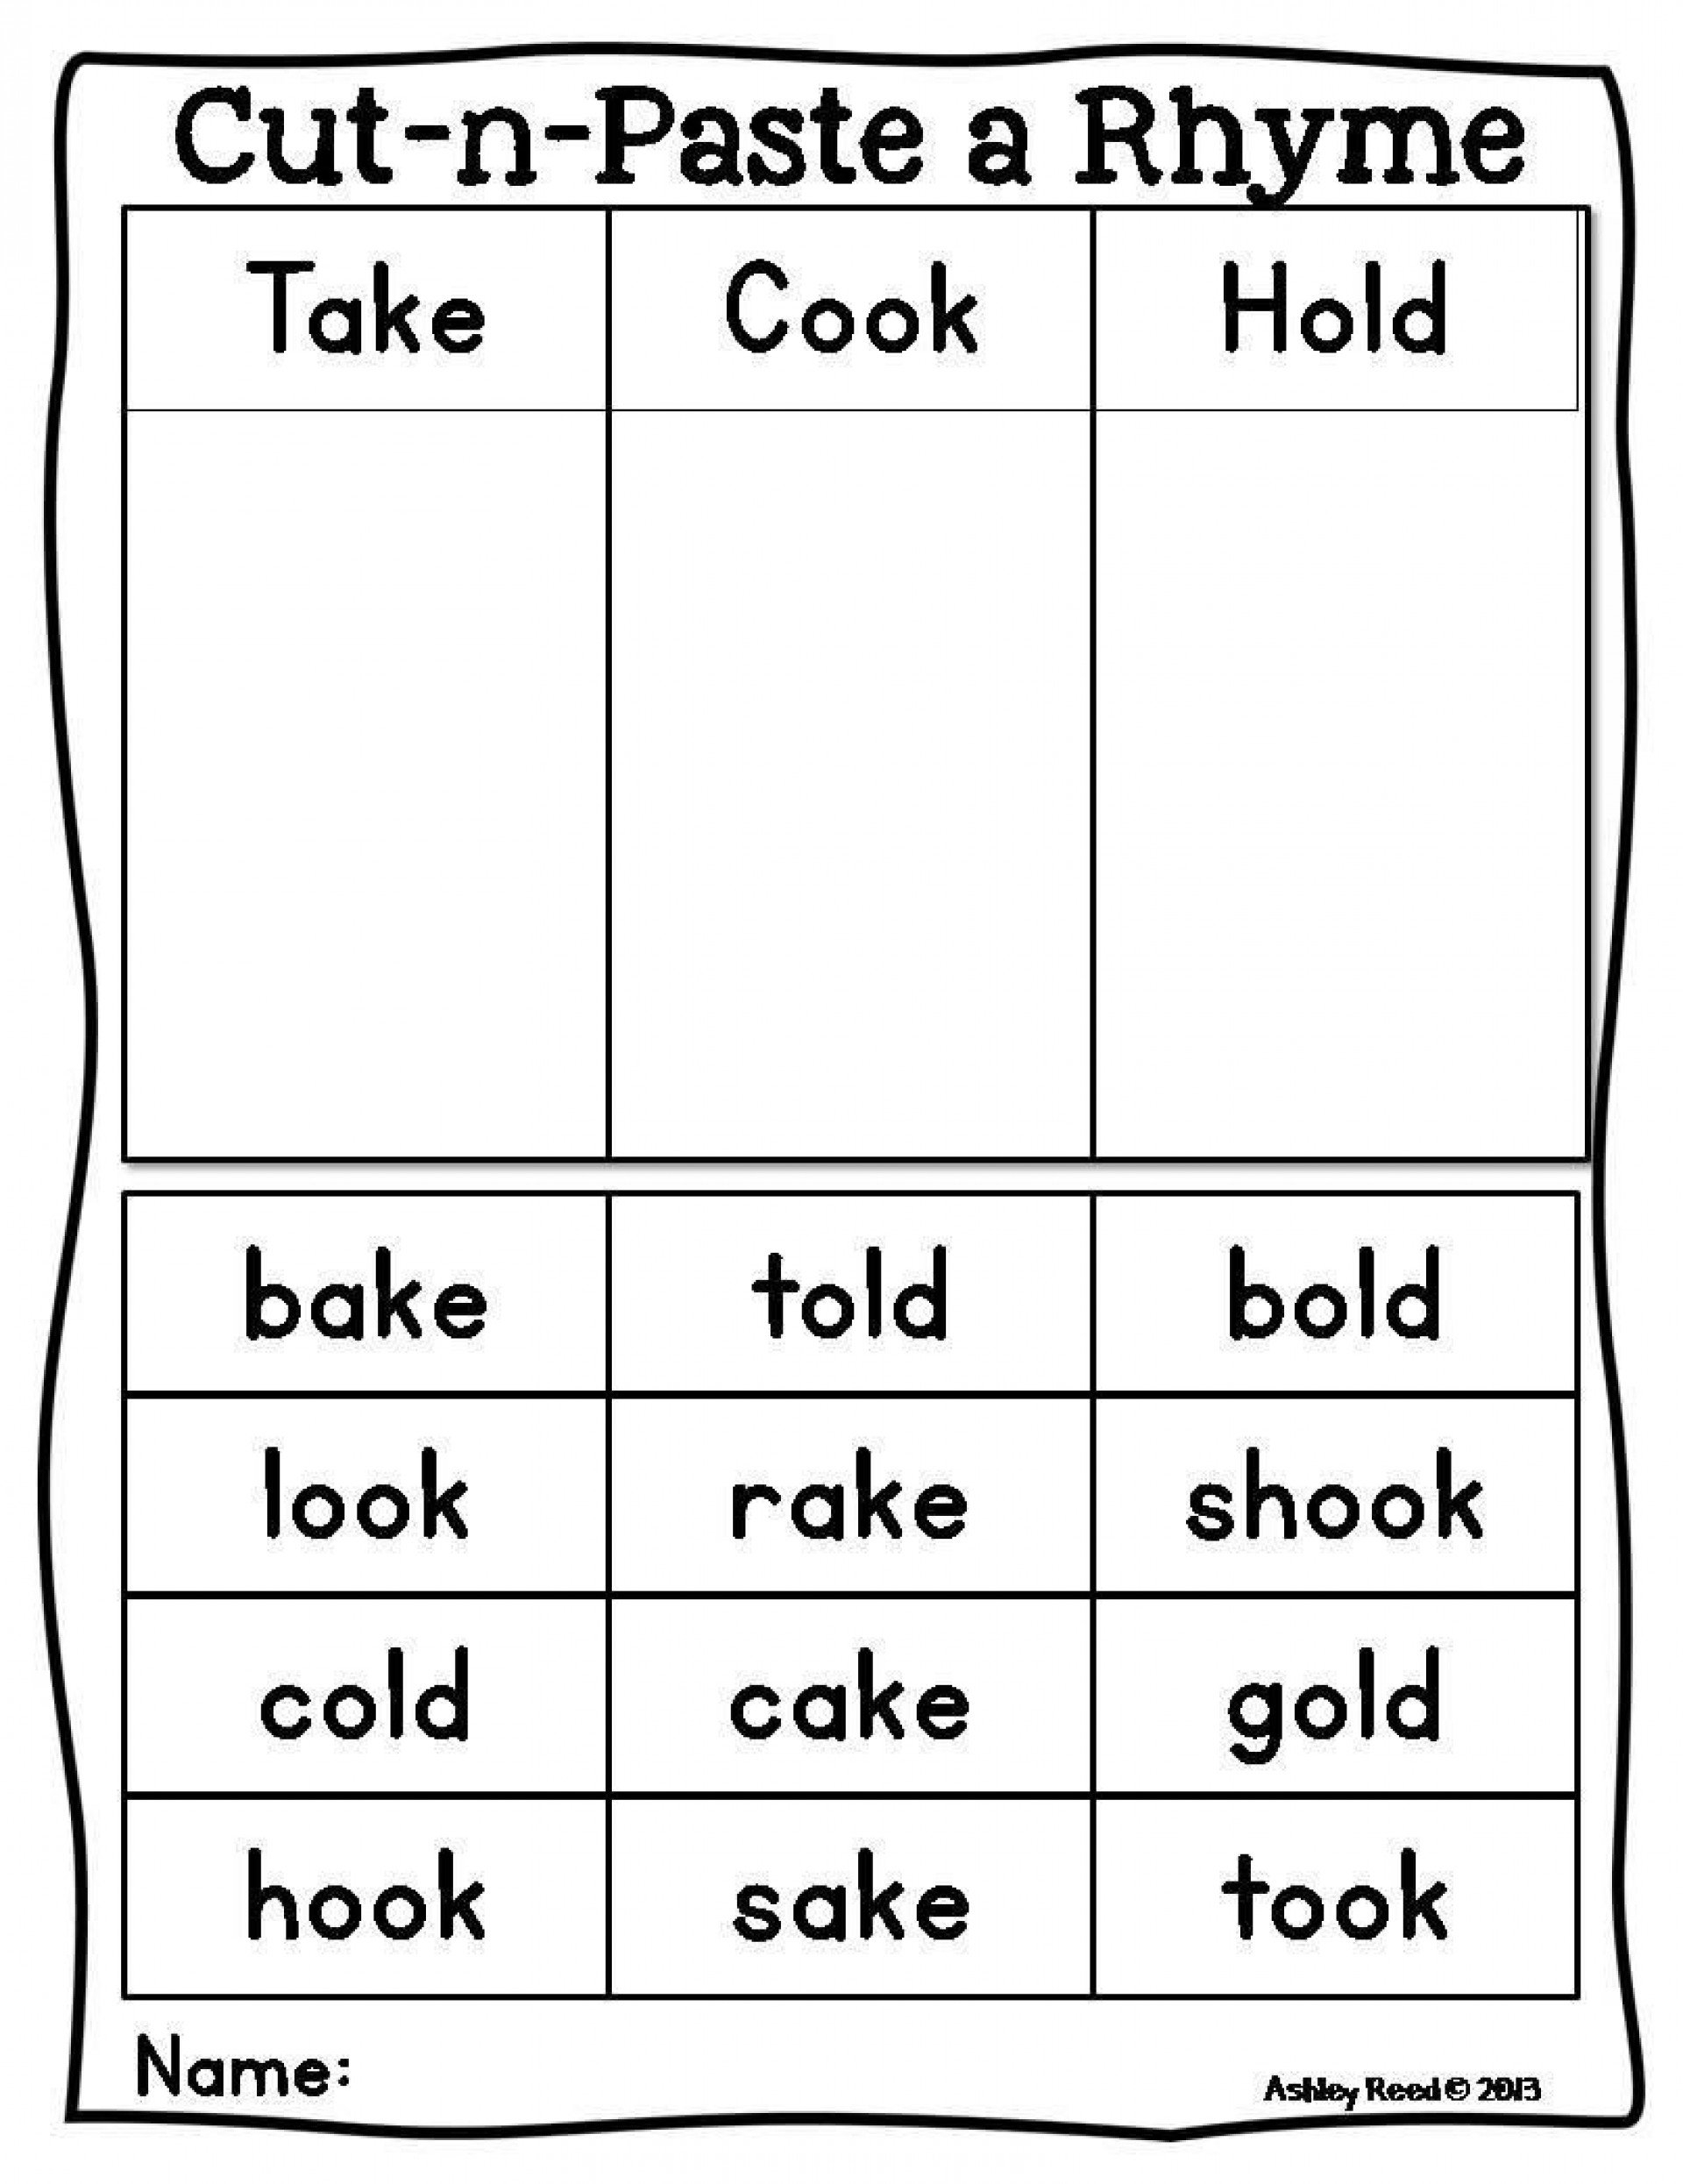 003 Free Printable Rhymings Rhyme Best Rhyming Words Word With Intended For Rhyming Worksheets For Kindergarten Cut And Paste